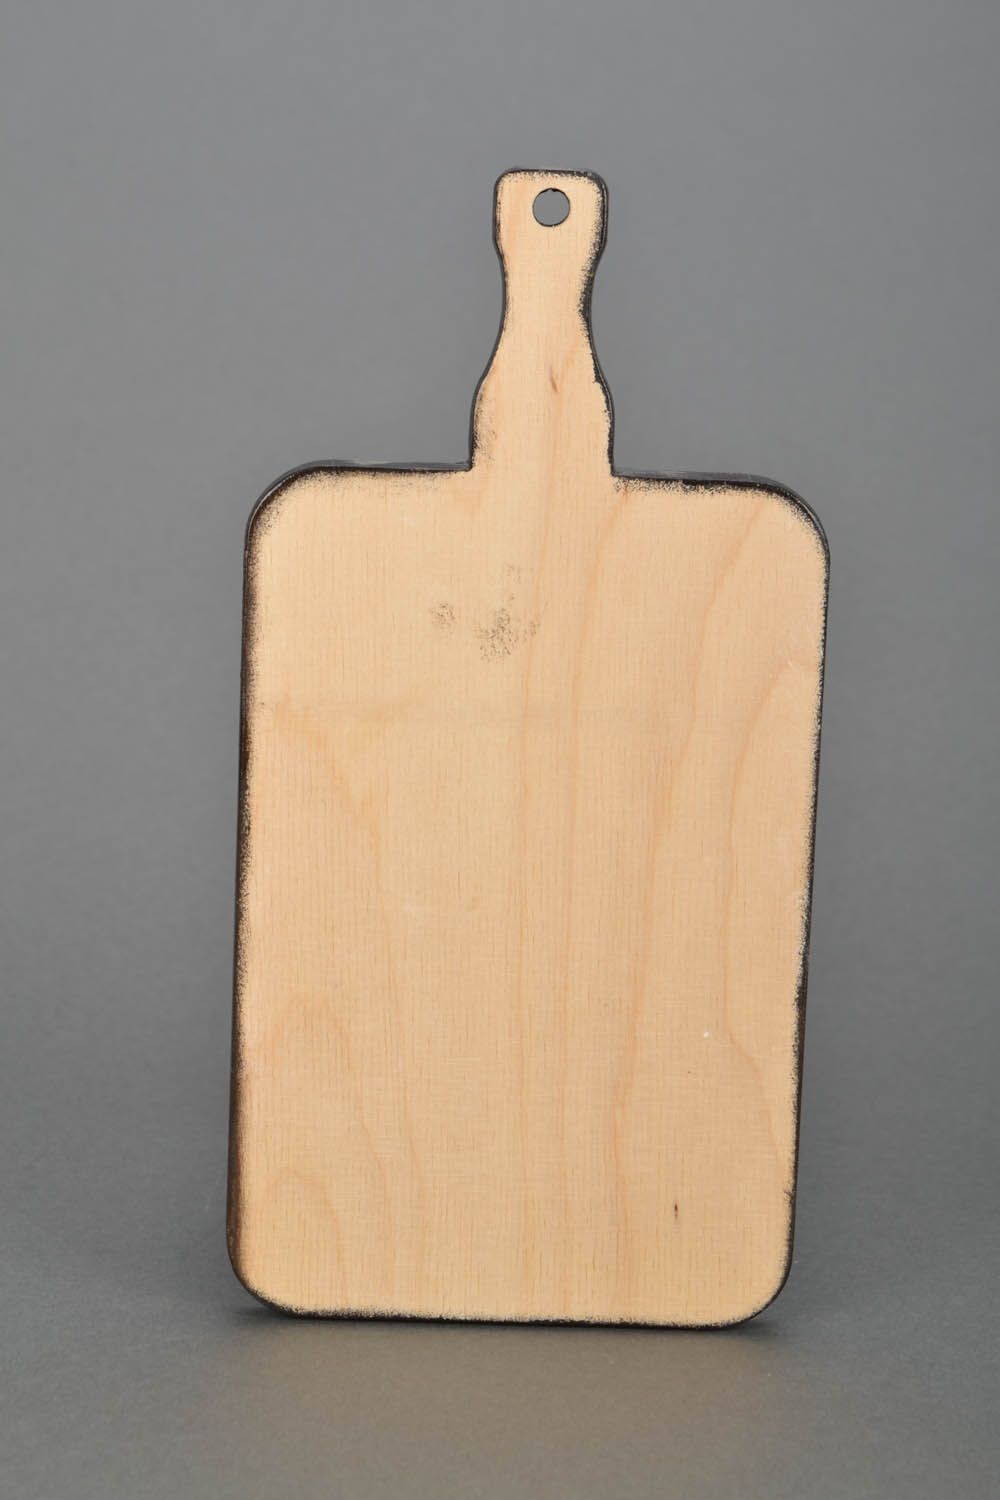 Planche à découper en bois faite main photo 5